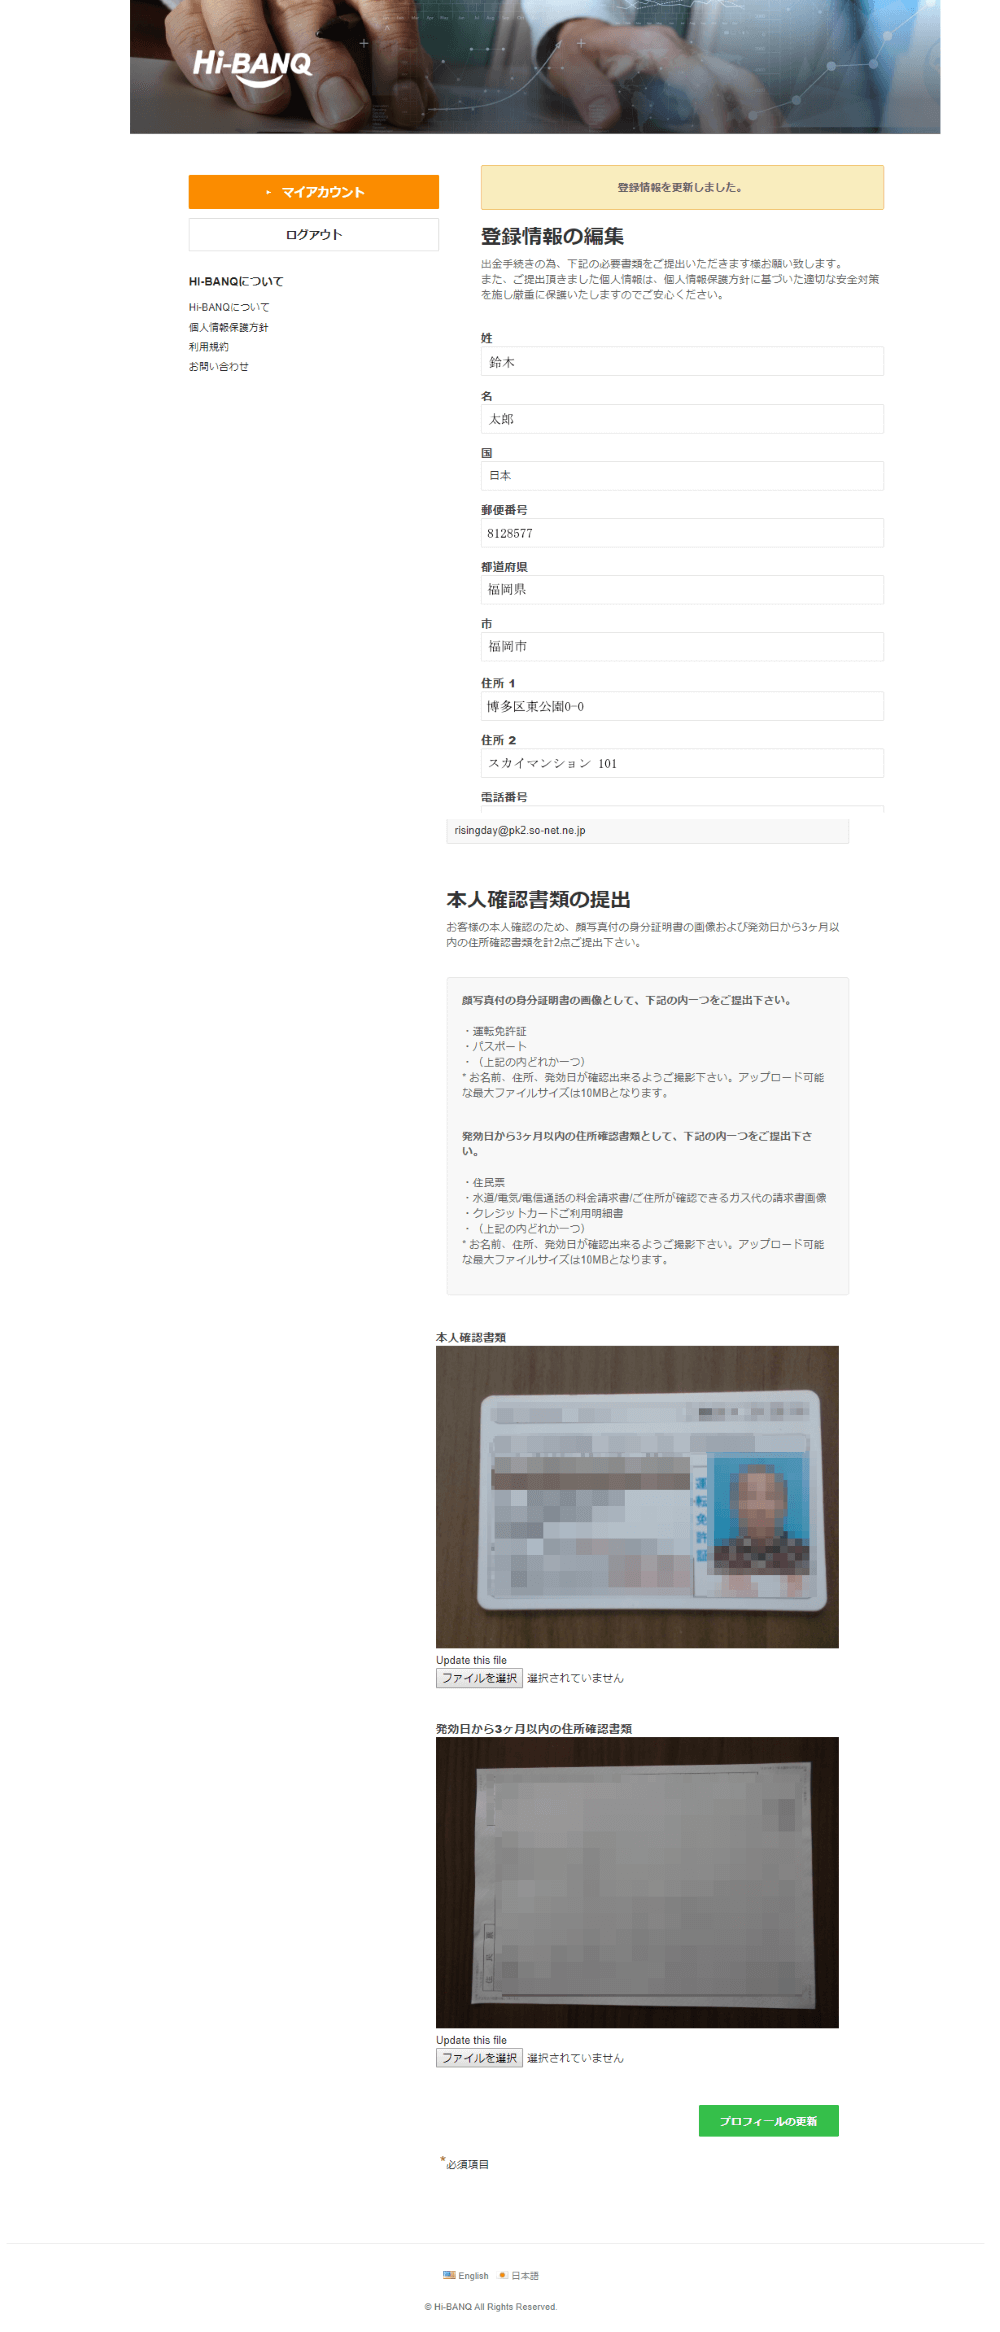 Hi-BANQユーザー登録情報の更新画像